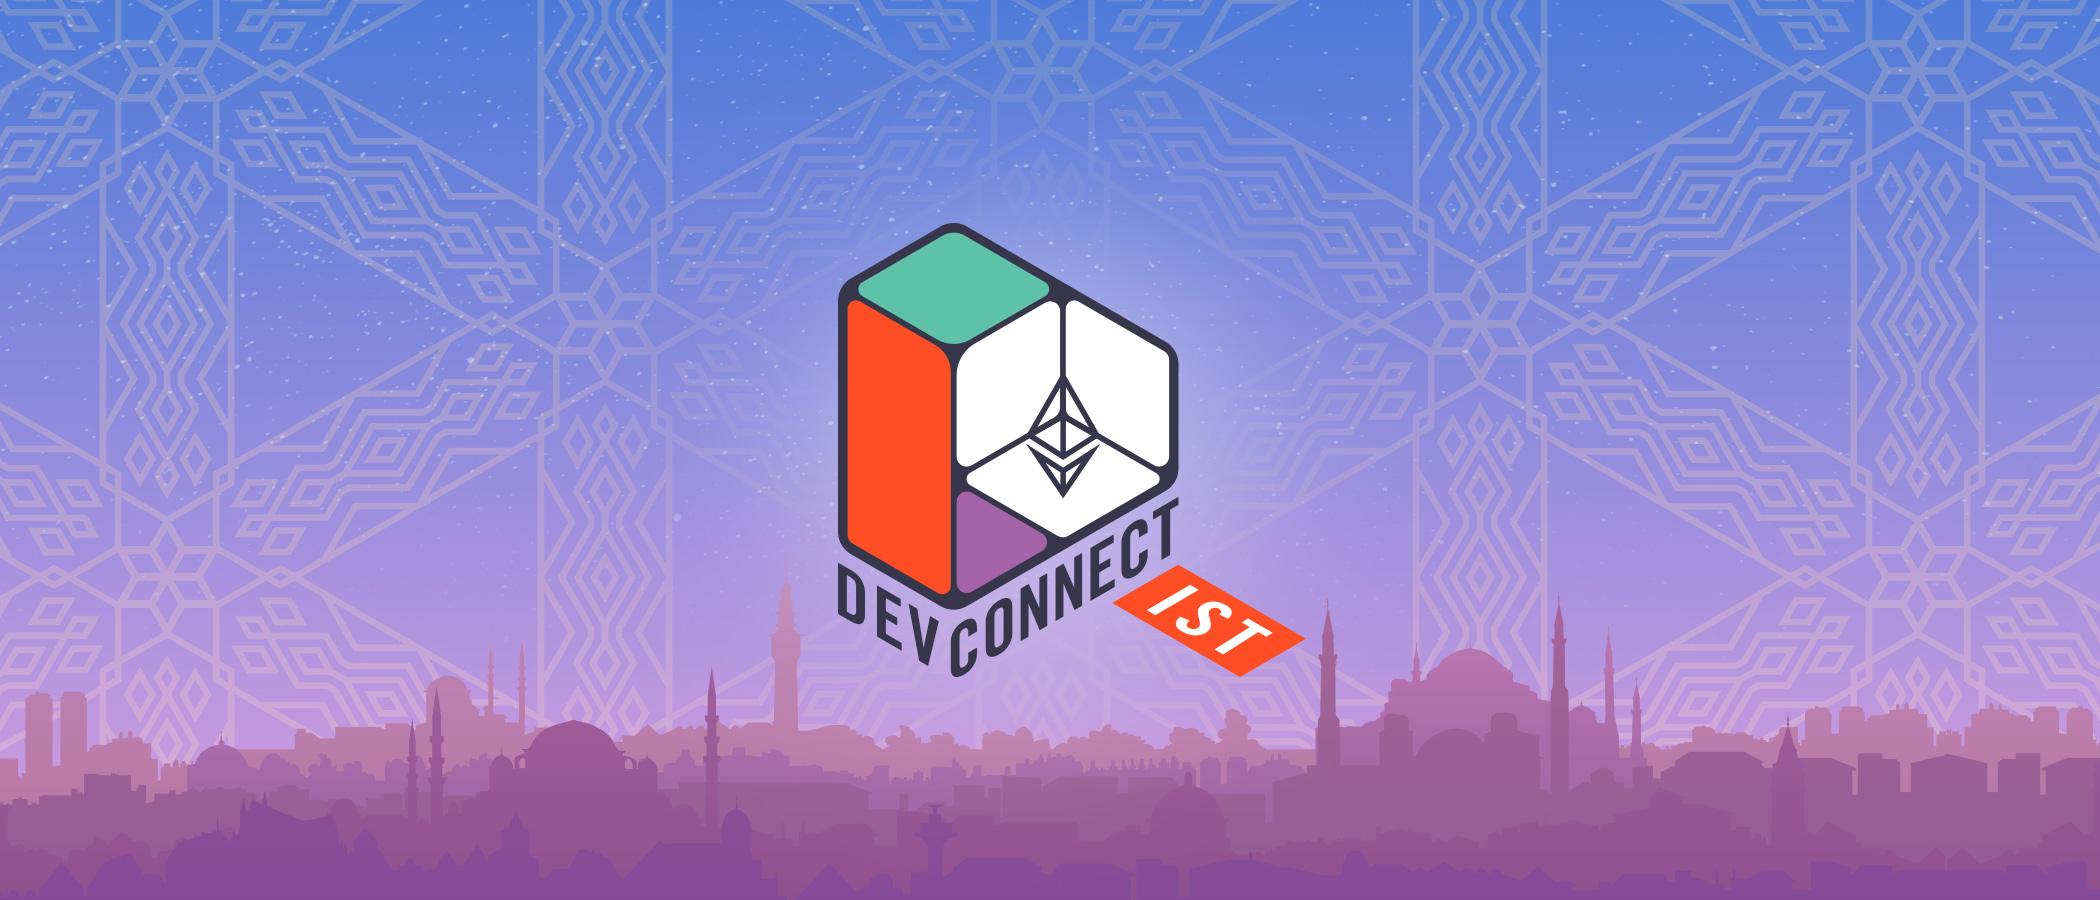 Devconnect возвращается! Увидимся в этом году в Стамбуле